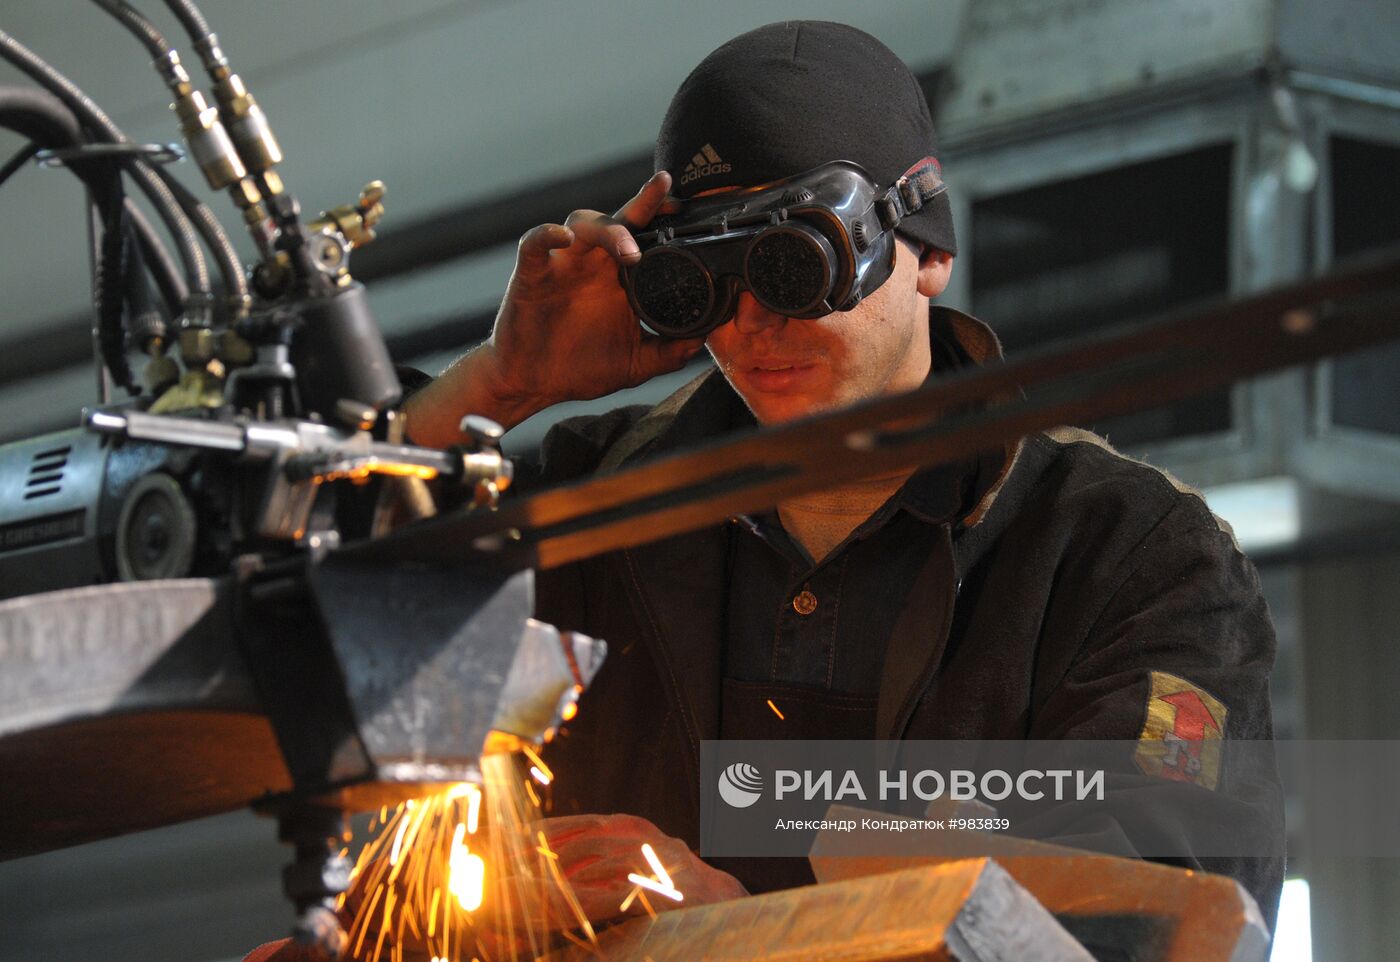 Работа завода "Трубодеталь" в Челябинске